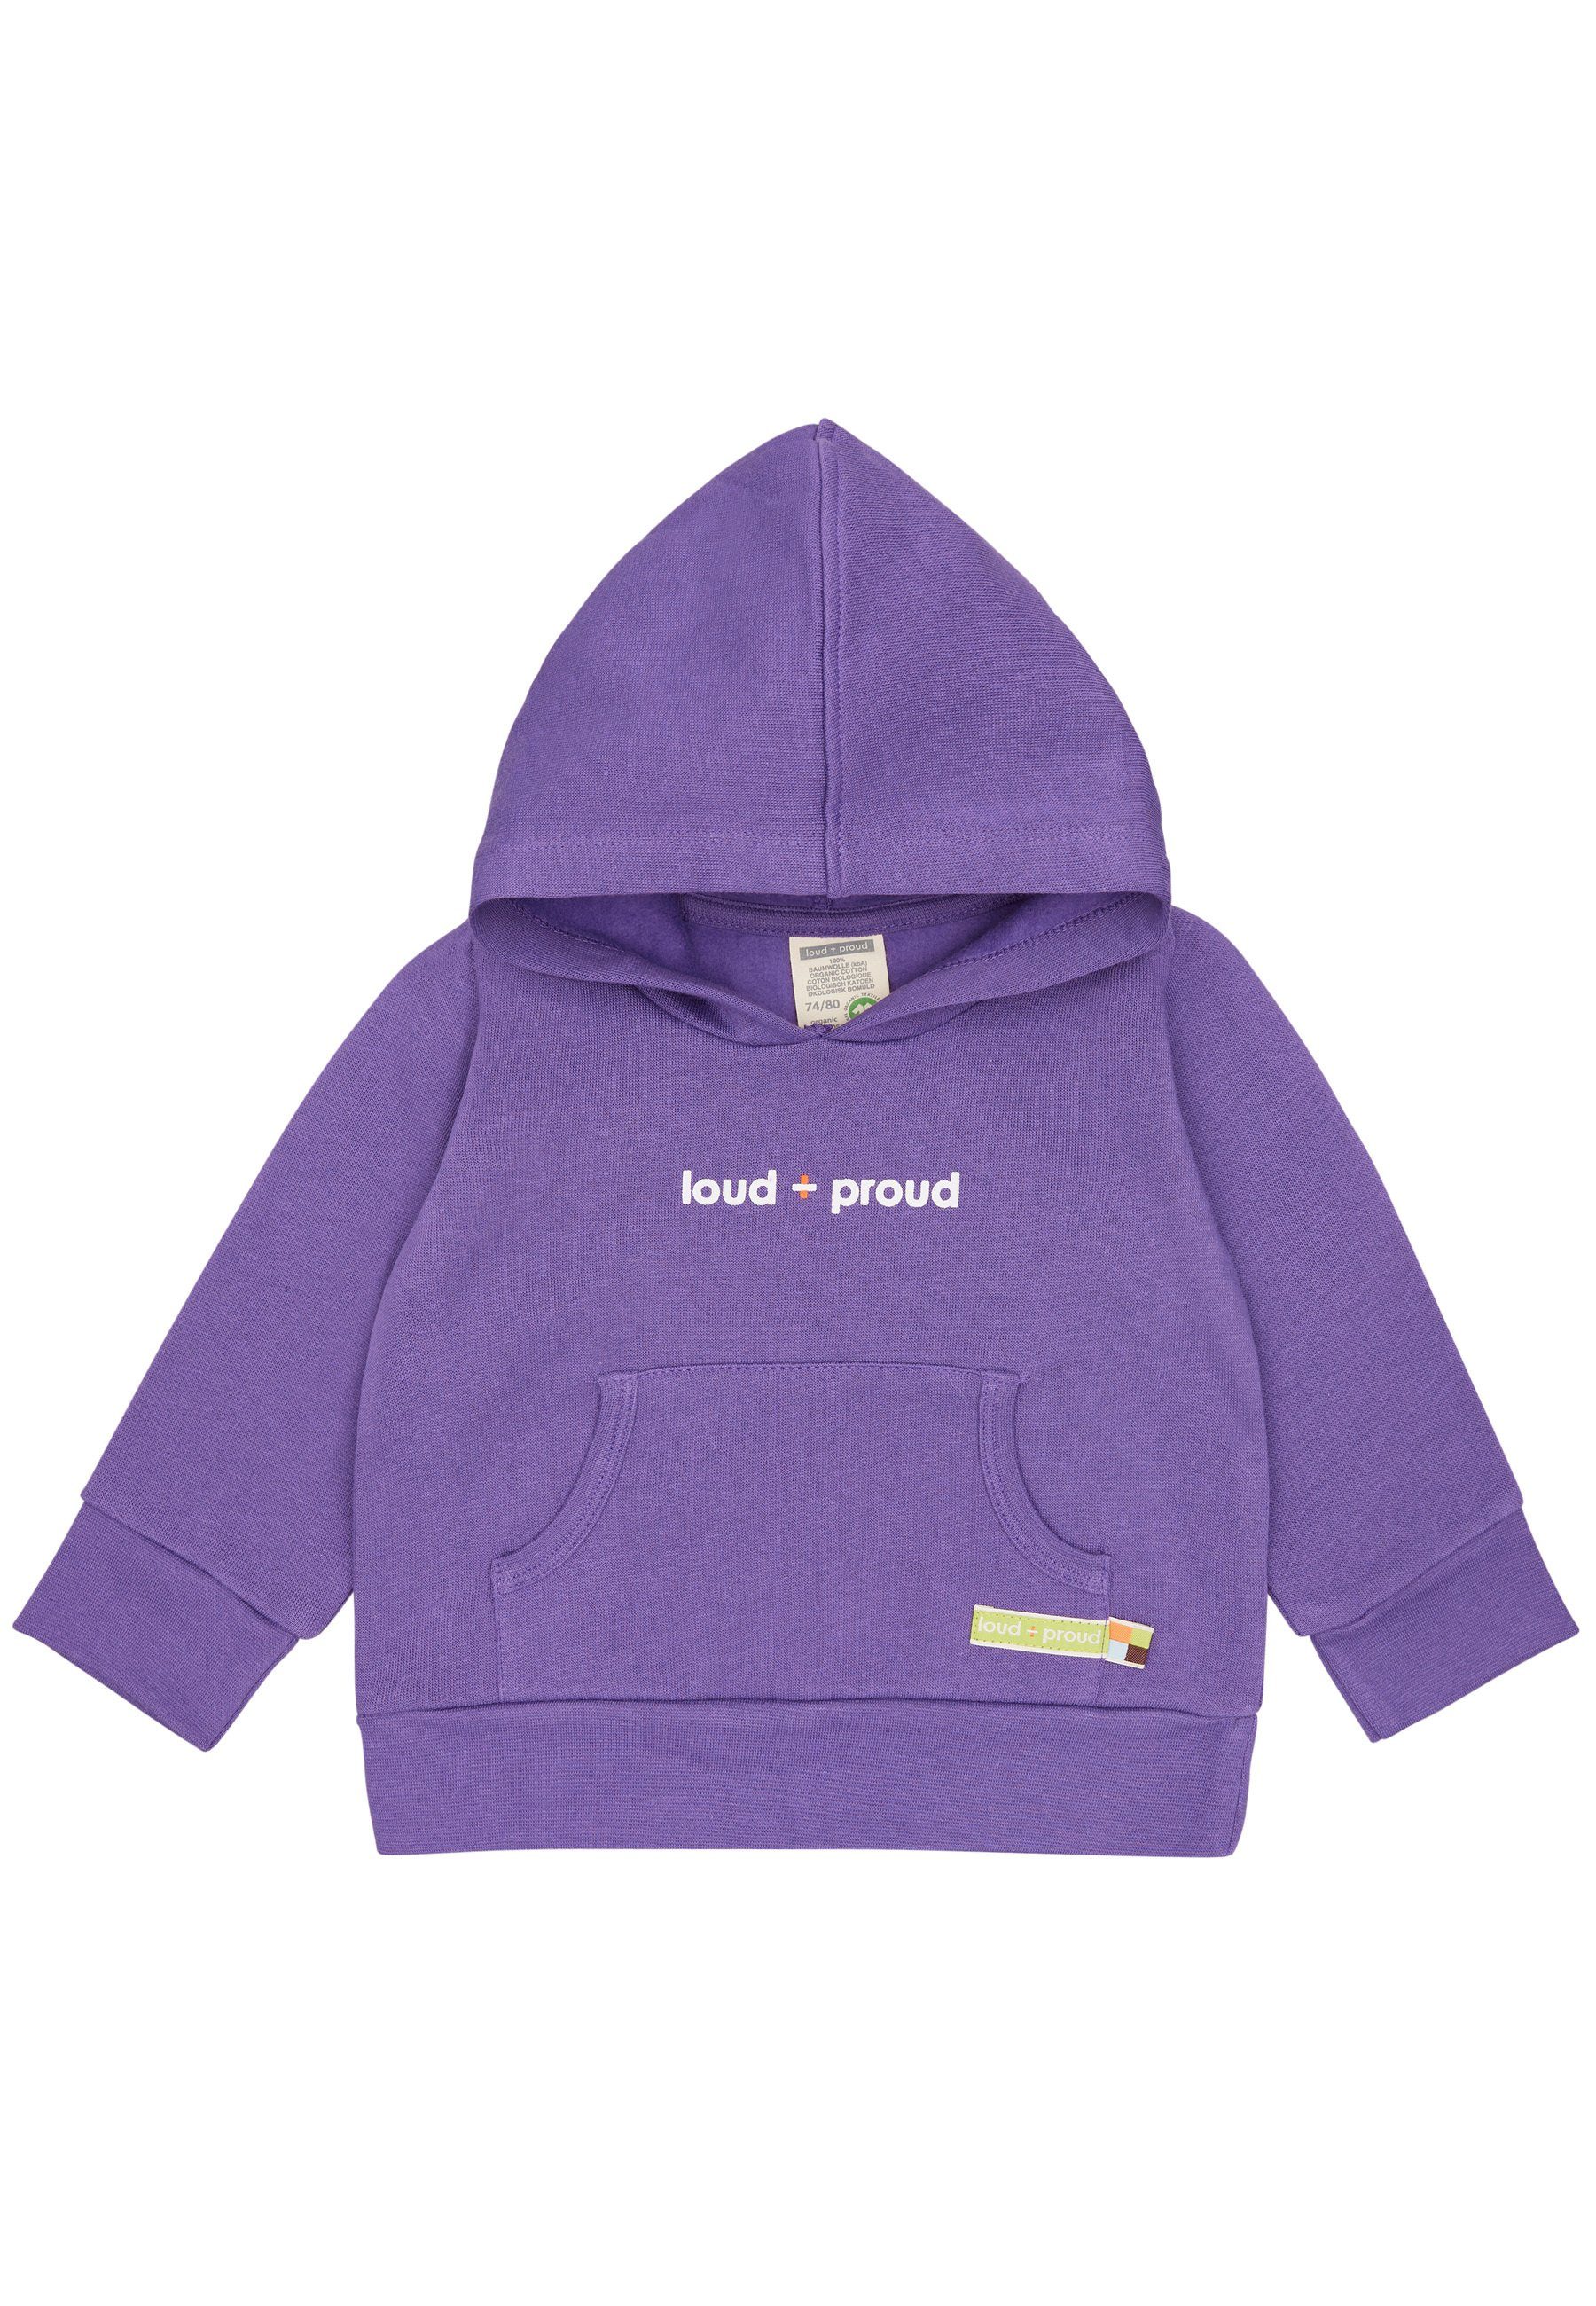 Bio-Baumwolle Hoodie loud proud + zertifizierte GOTS violet